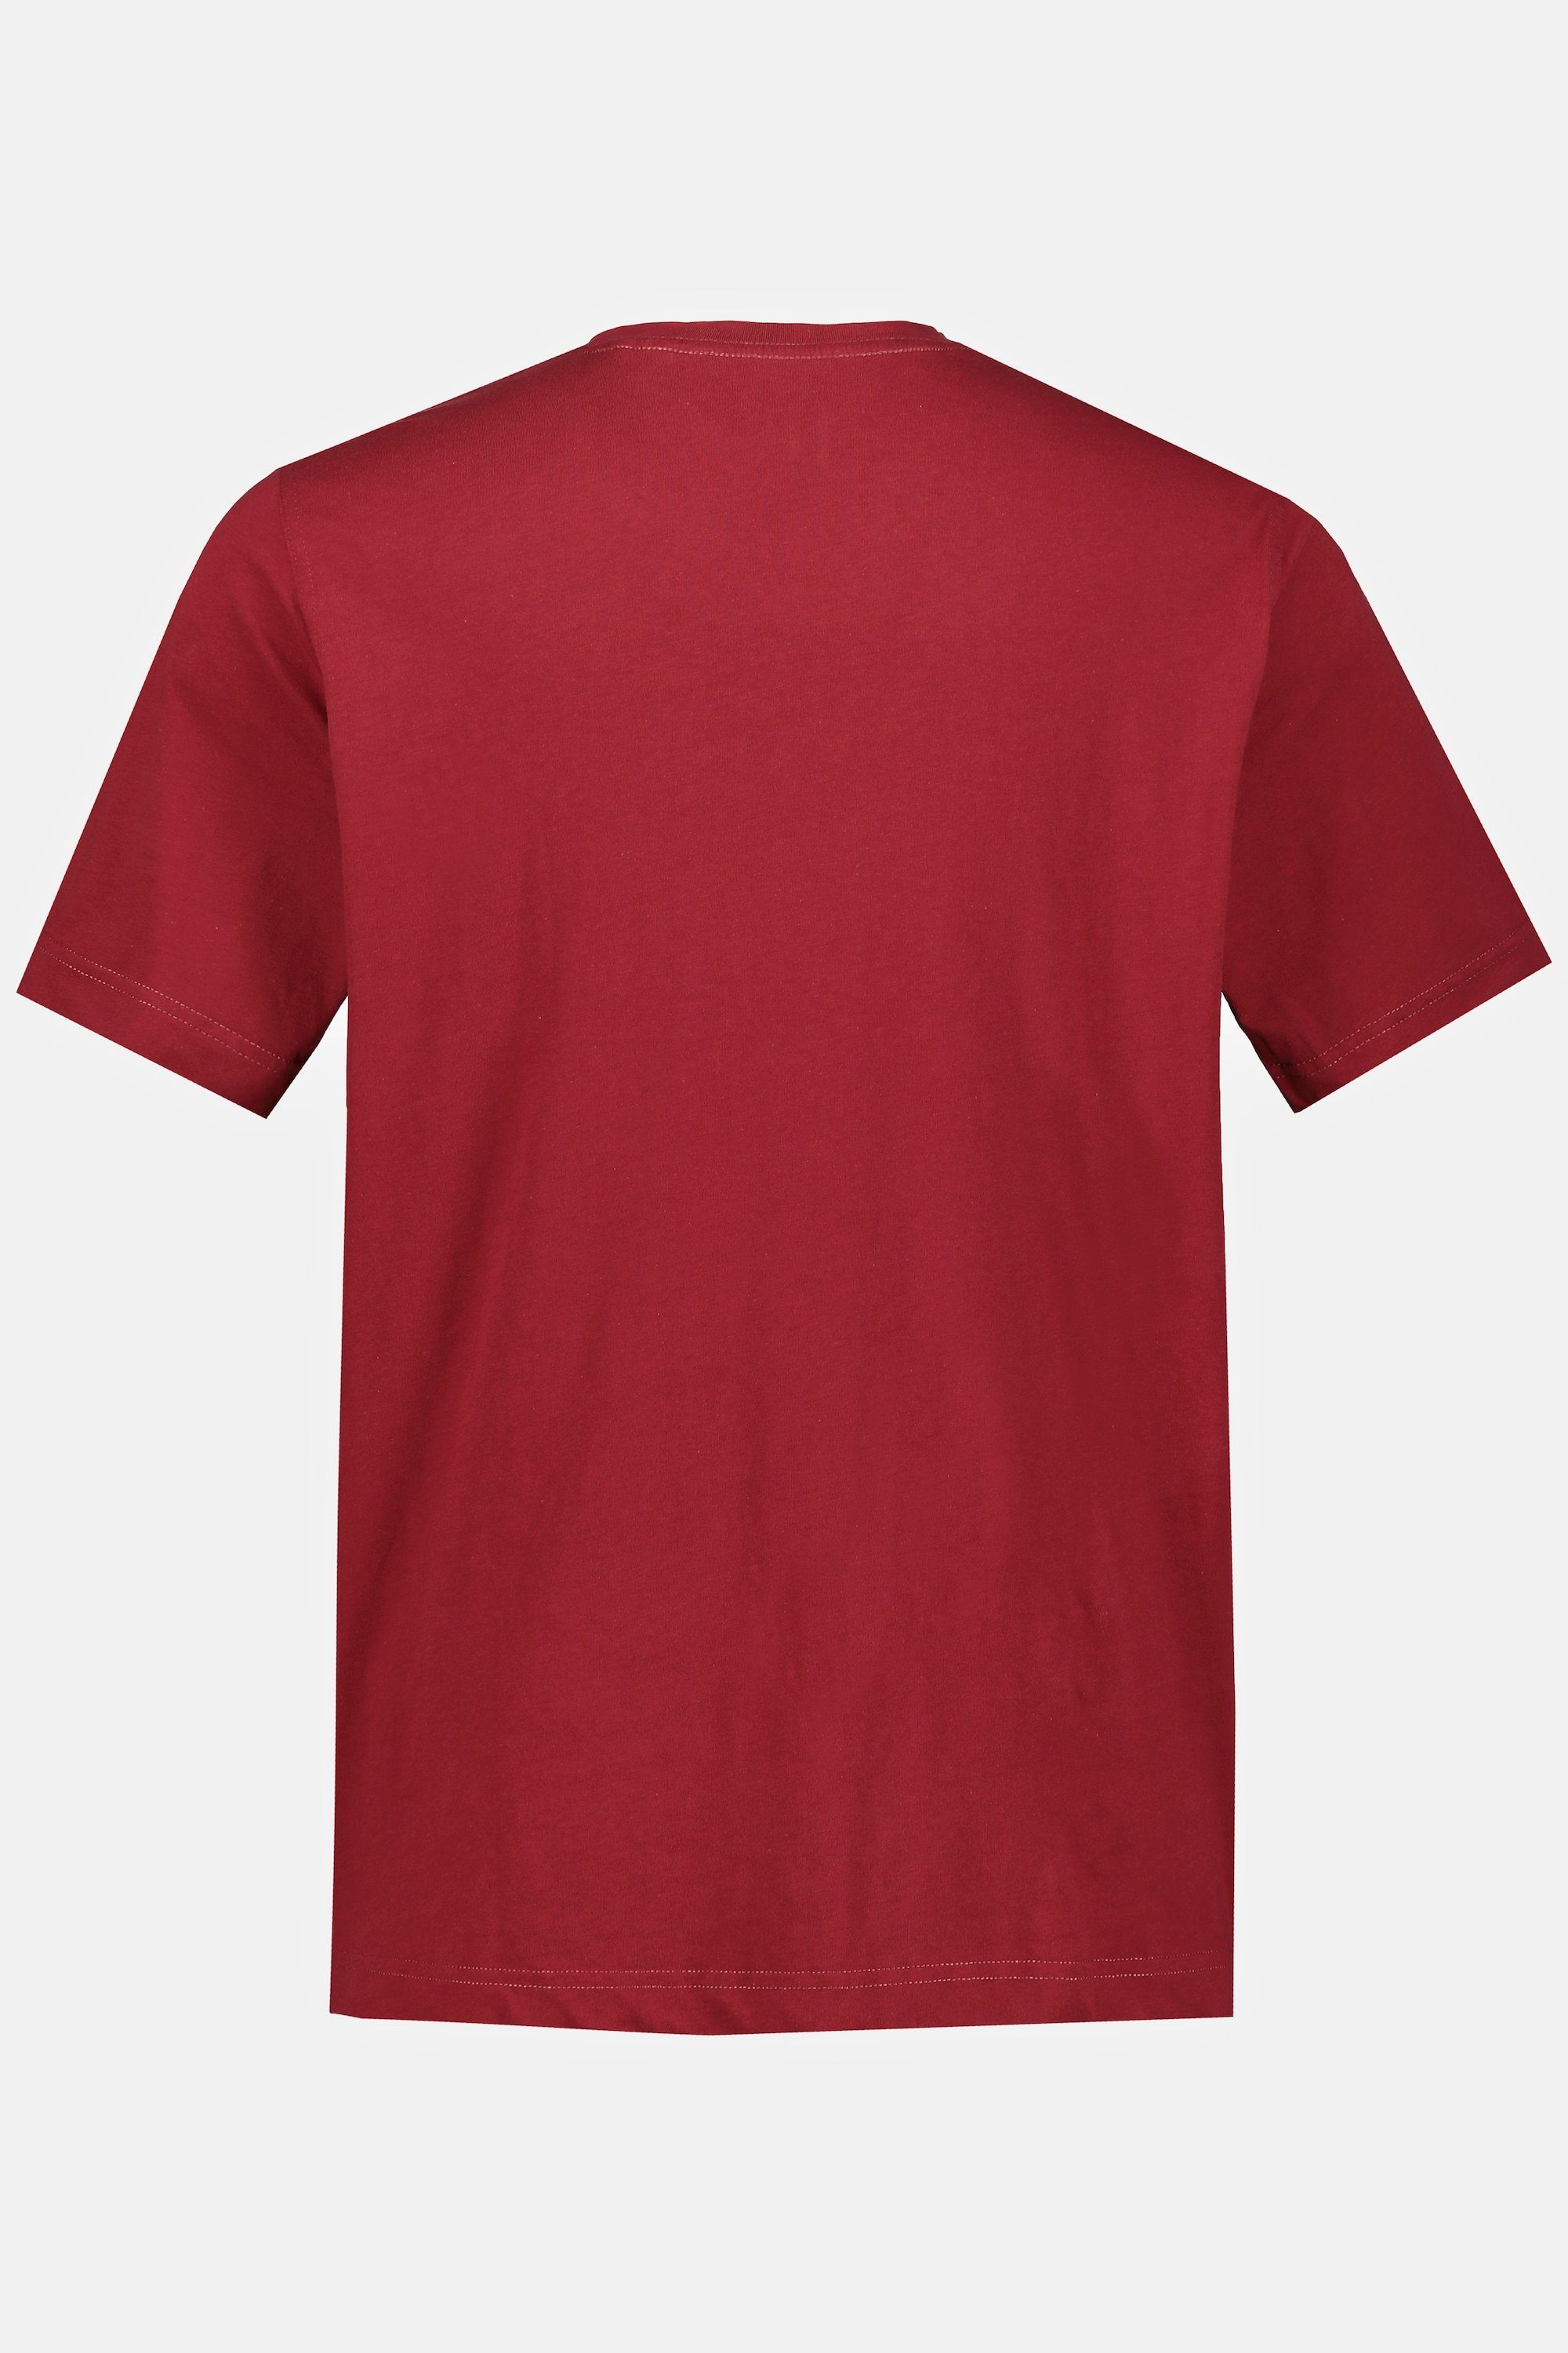 dunkelrot gekämmte Rundhals T-Shirt JP1880 T-Shirt Baumwolle Basic bis 8XL